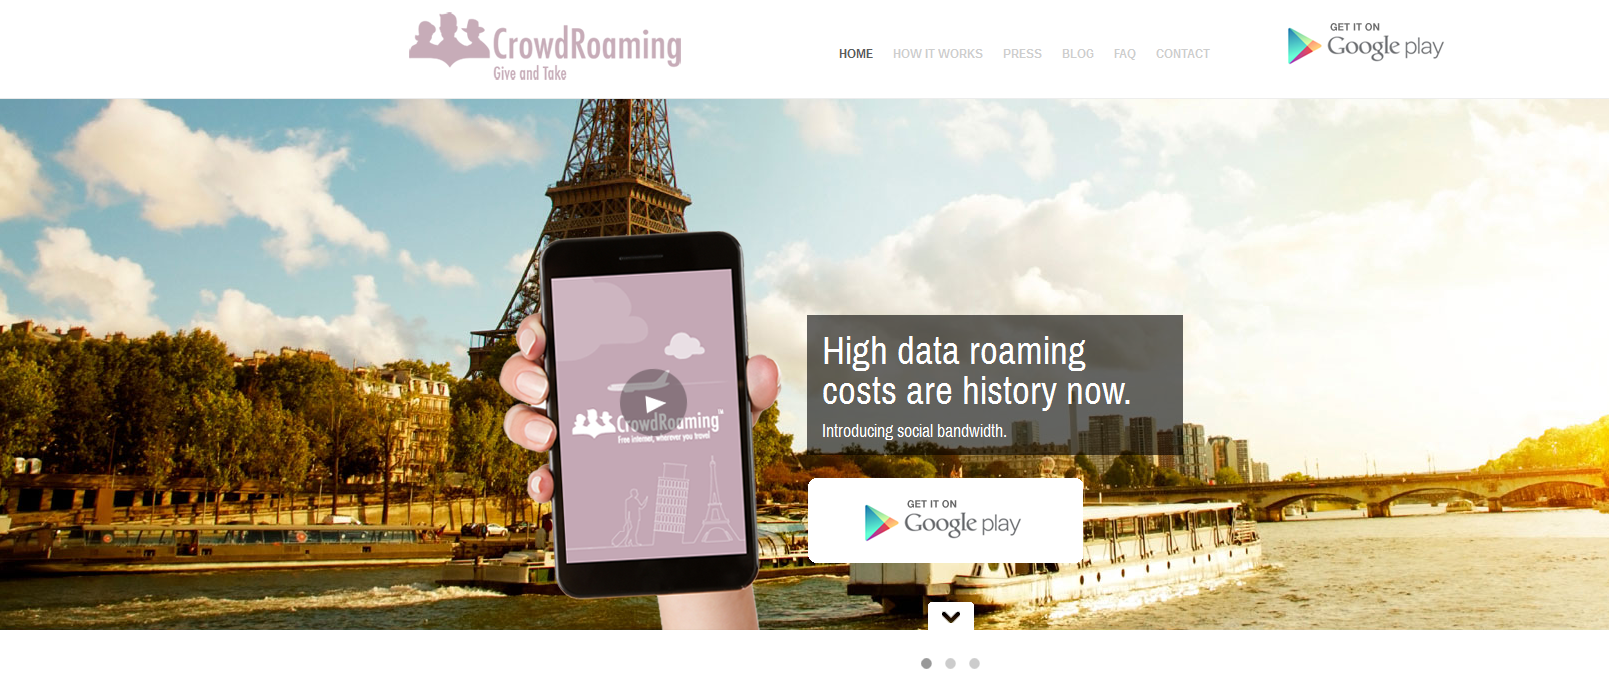 Jenseits der Gebühren: App von CrowdRoaming für kostenloses Surfen im Urlaub 